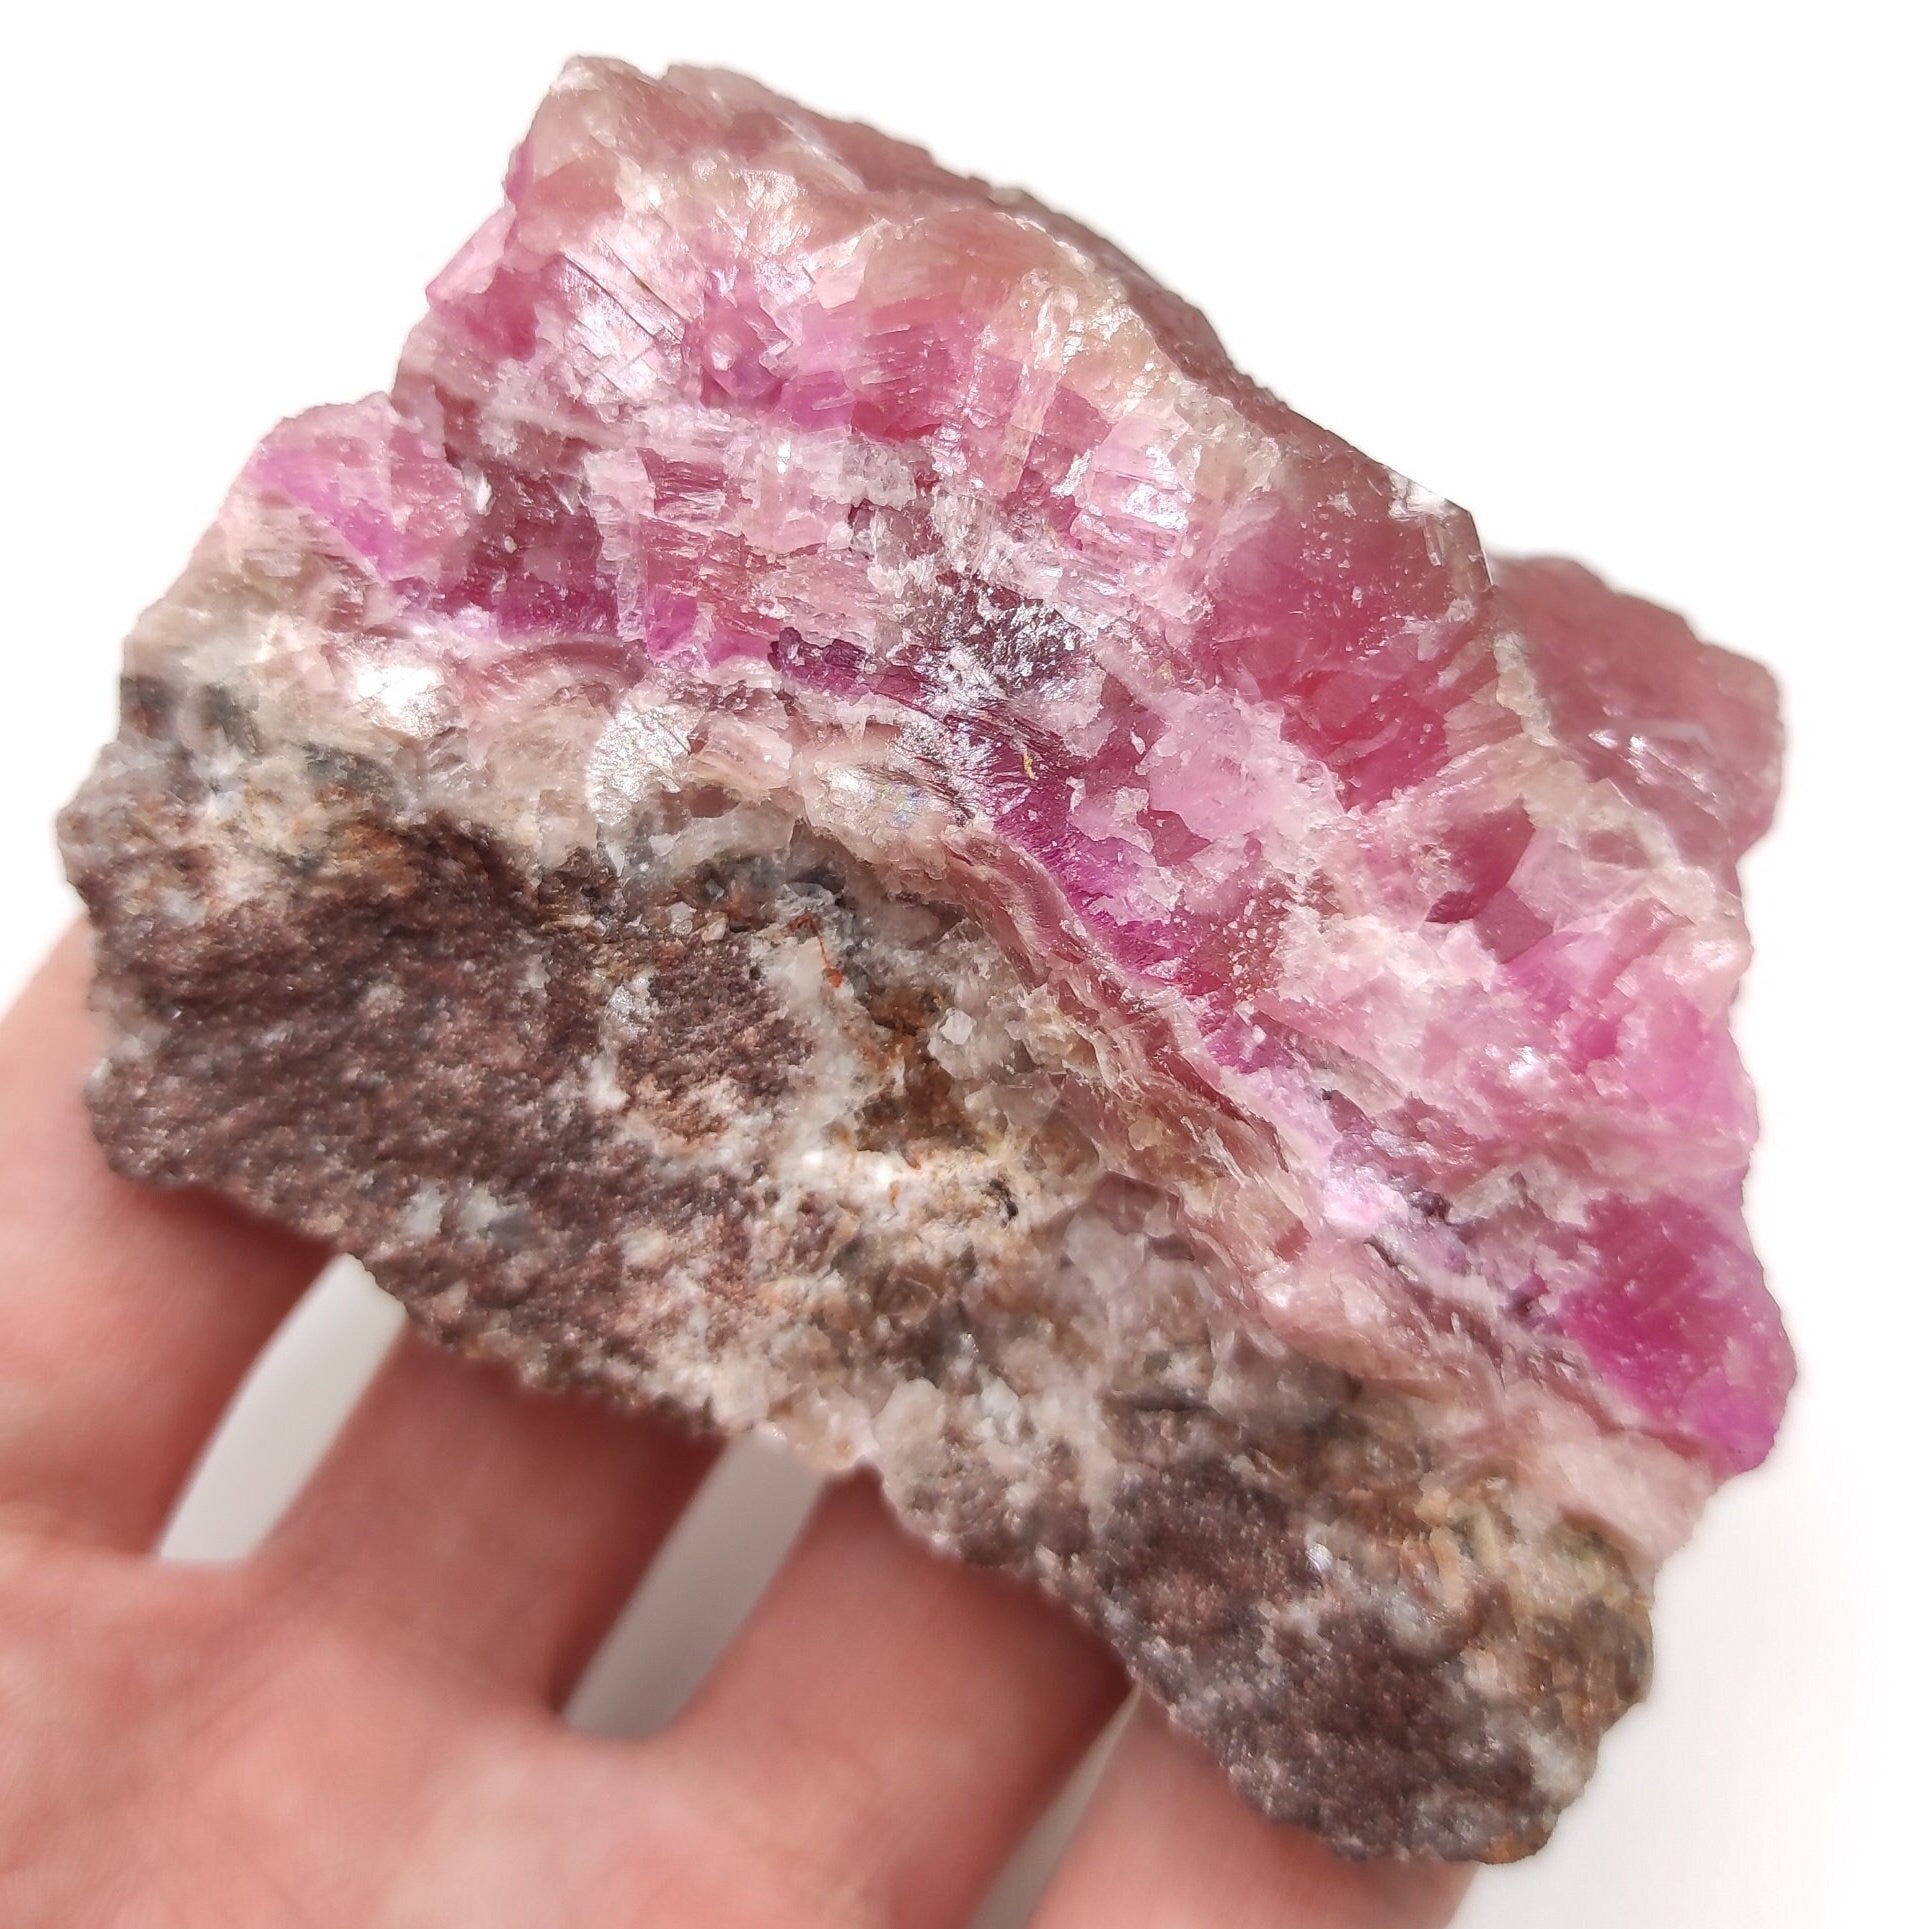 230g Cobalto Calcite - Pink Cobalt Calcite from Bou Azzer, Morocco - Salrose Stone - Cobaltocalcite Mineral Specimen - Pink Calcite Crystal